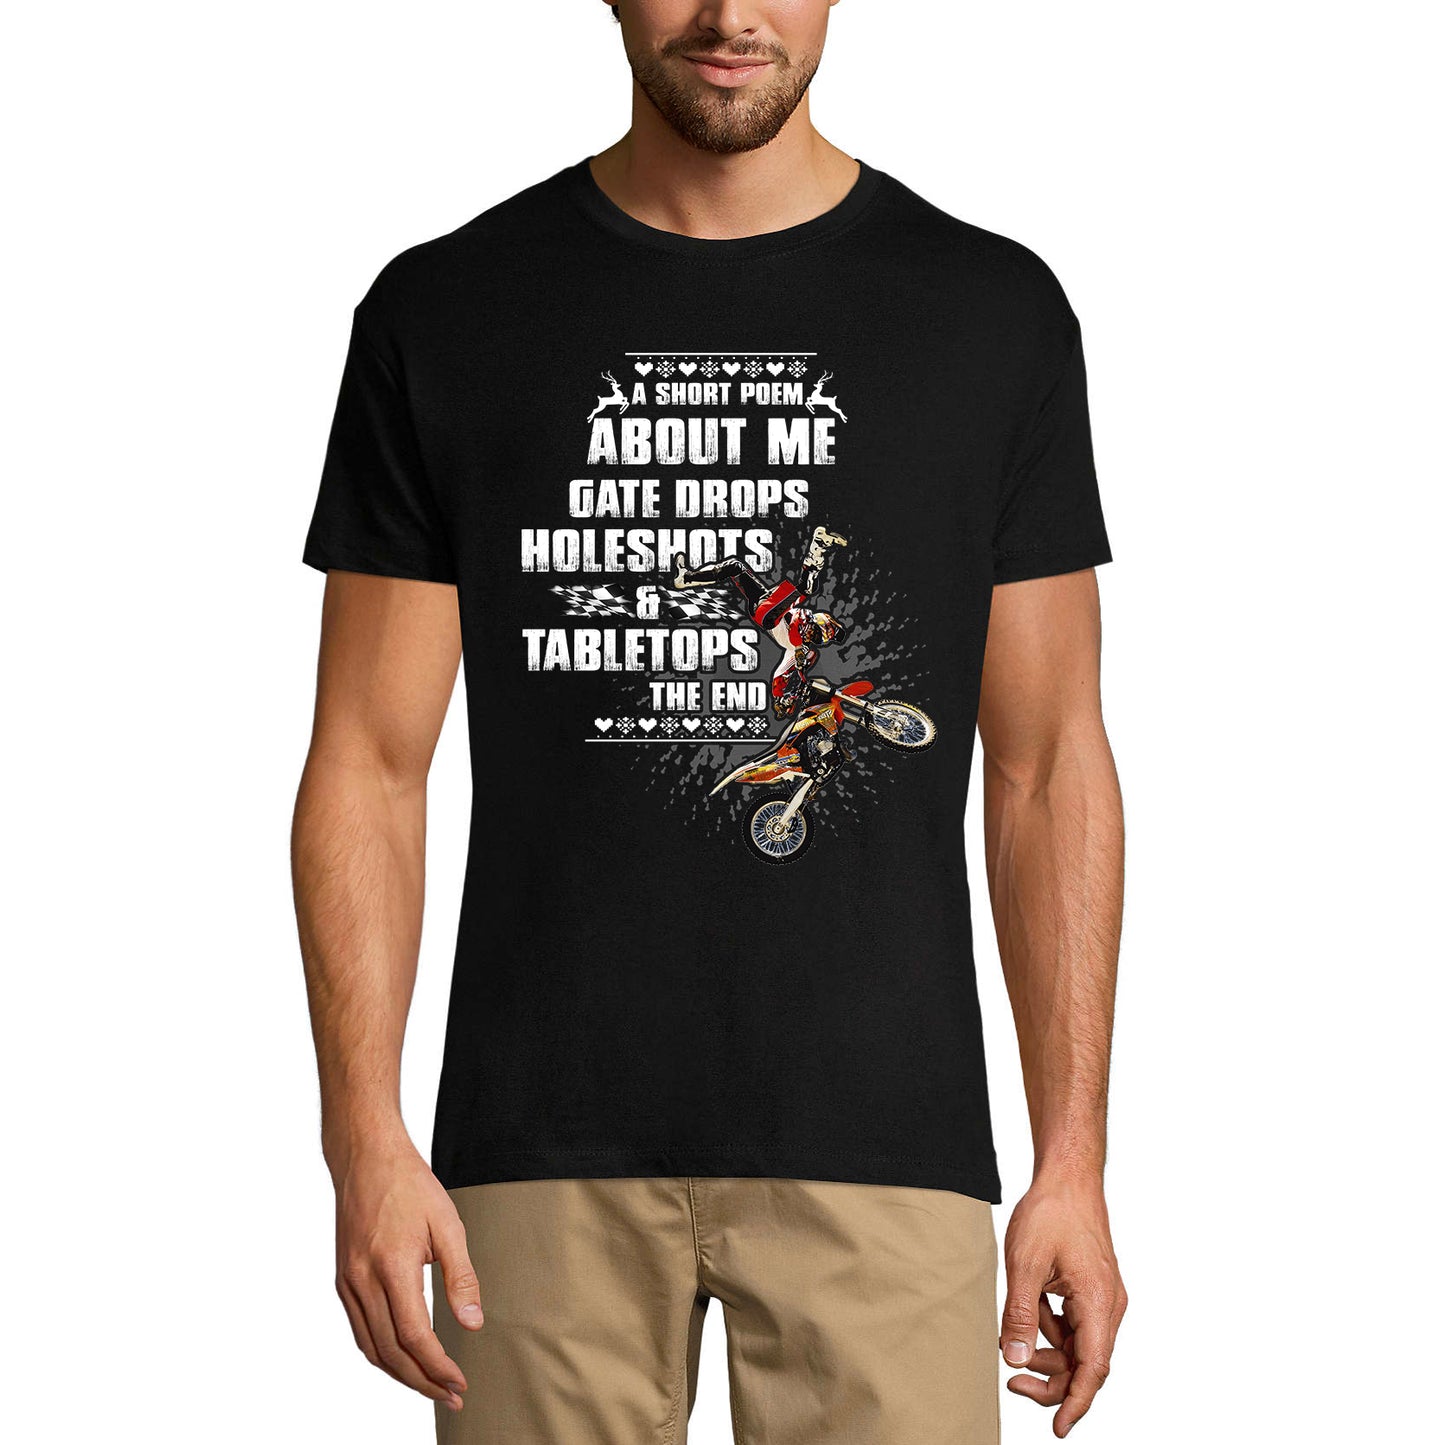 ULTRABASIC Men's Novelty T-Shirt Short Poem - Funny Biker Tee Shirt